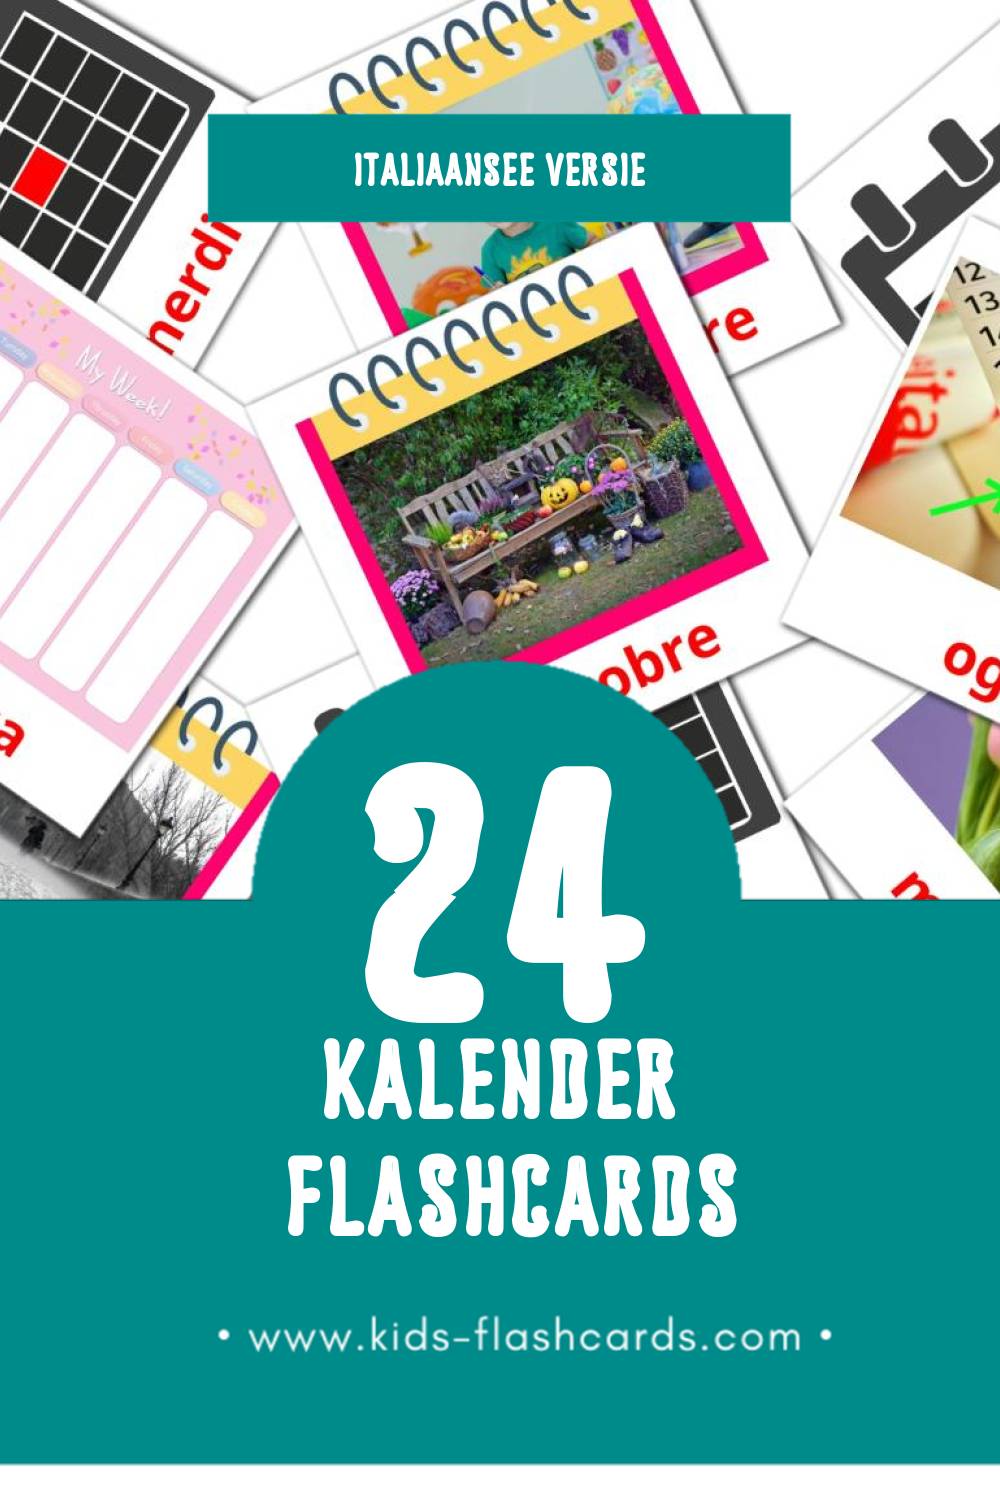 Visuele Calendario Flashcards voor Kleuters (24 kaarten in het Italiaanse)